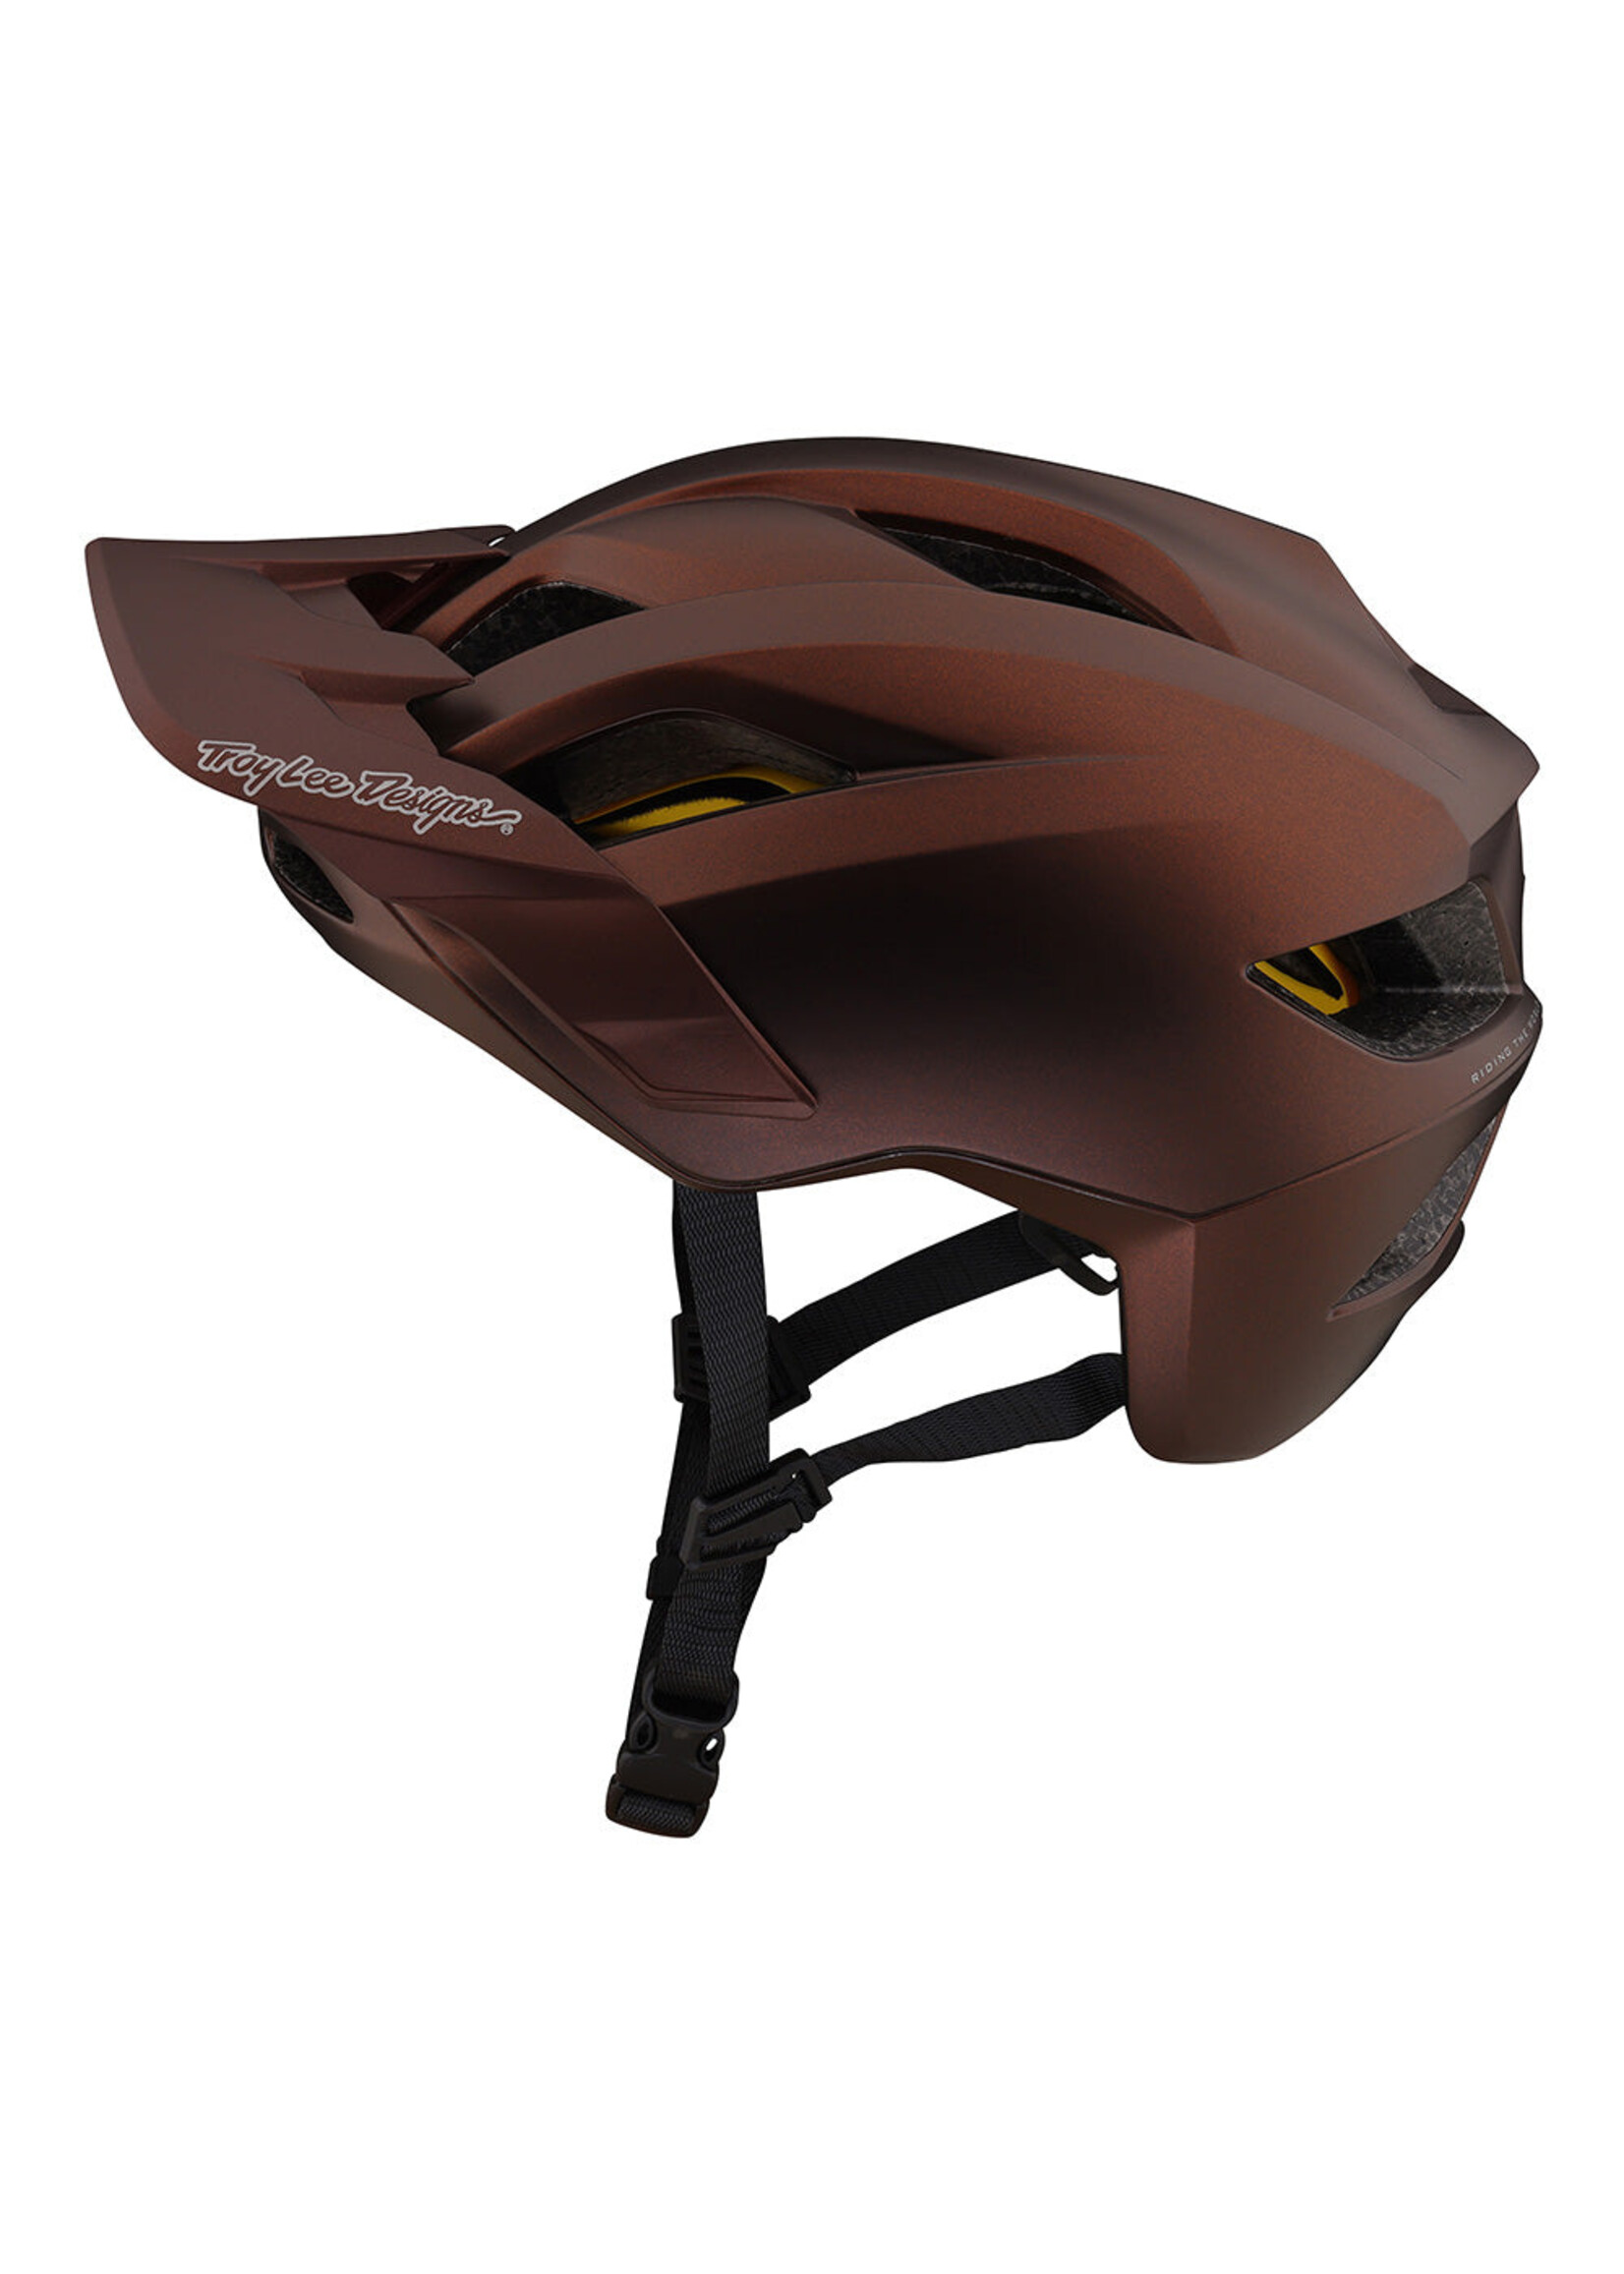 Troy Lee Designs Flowline Helmet with MIPS - Orbit Cinnamon